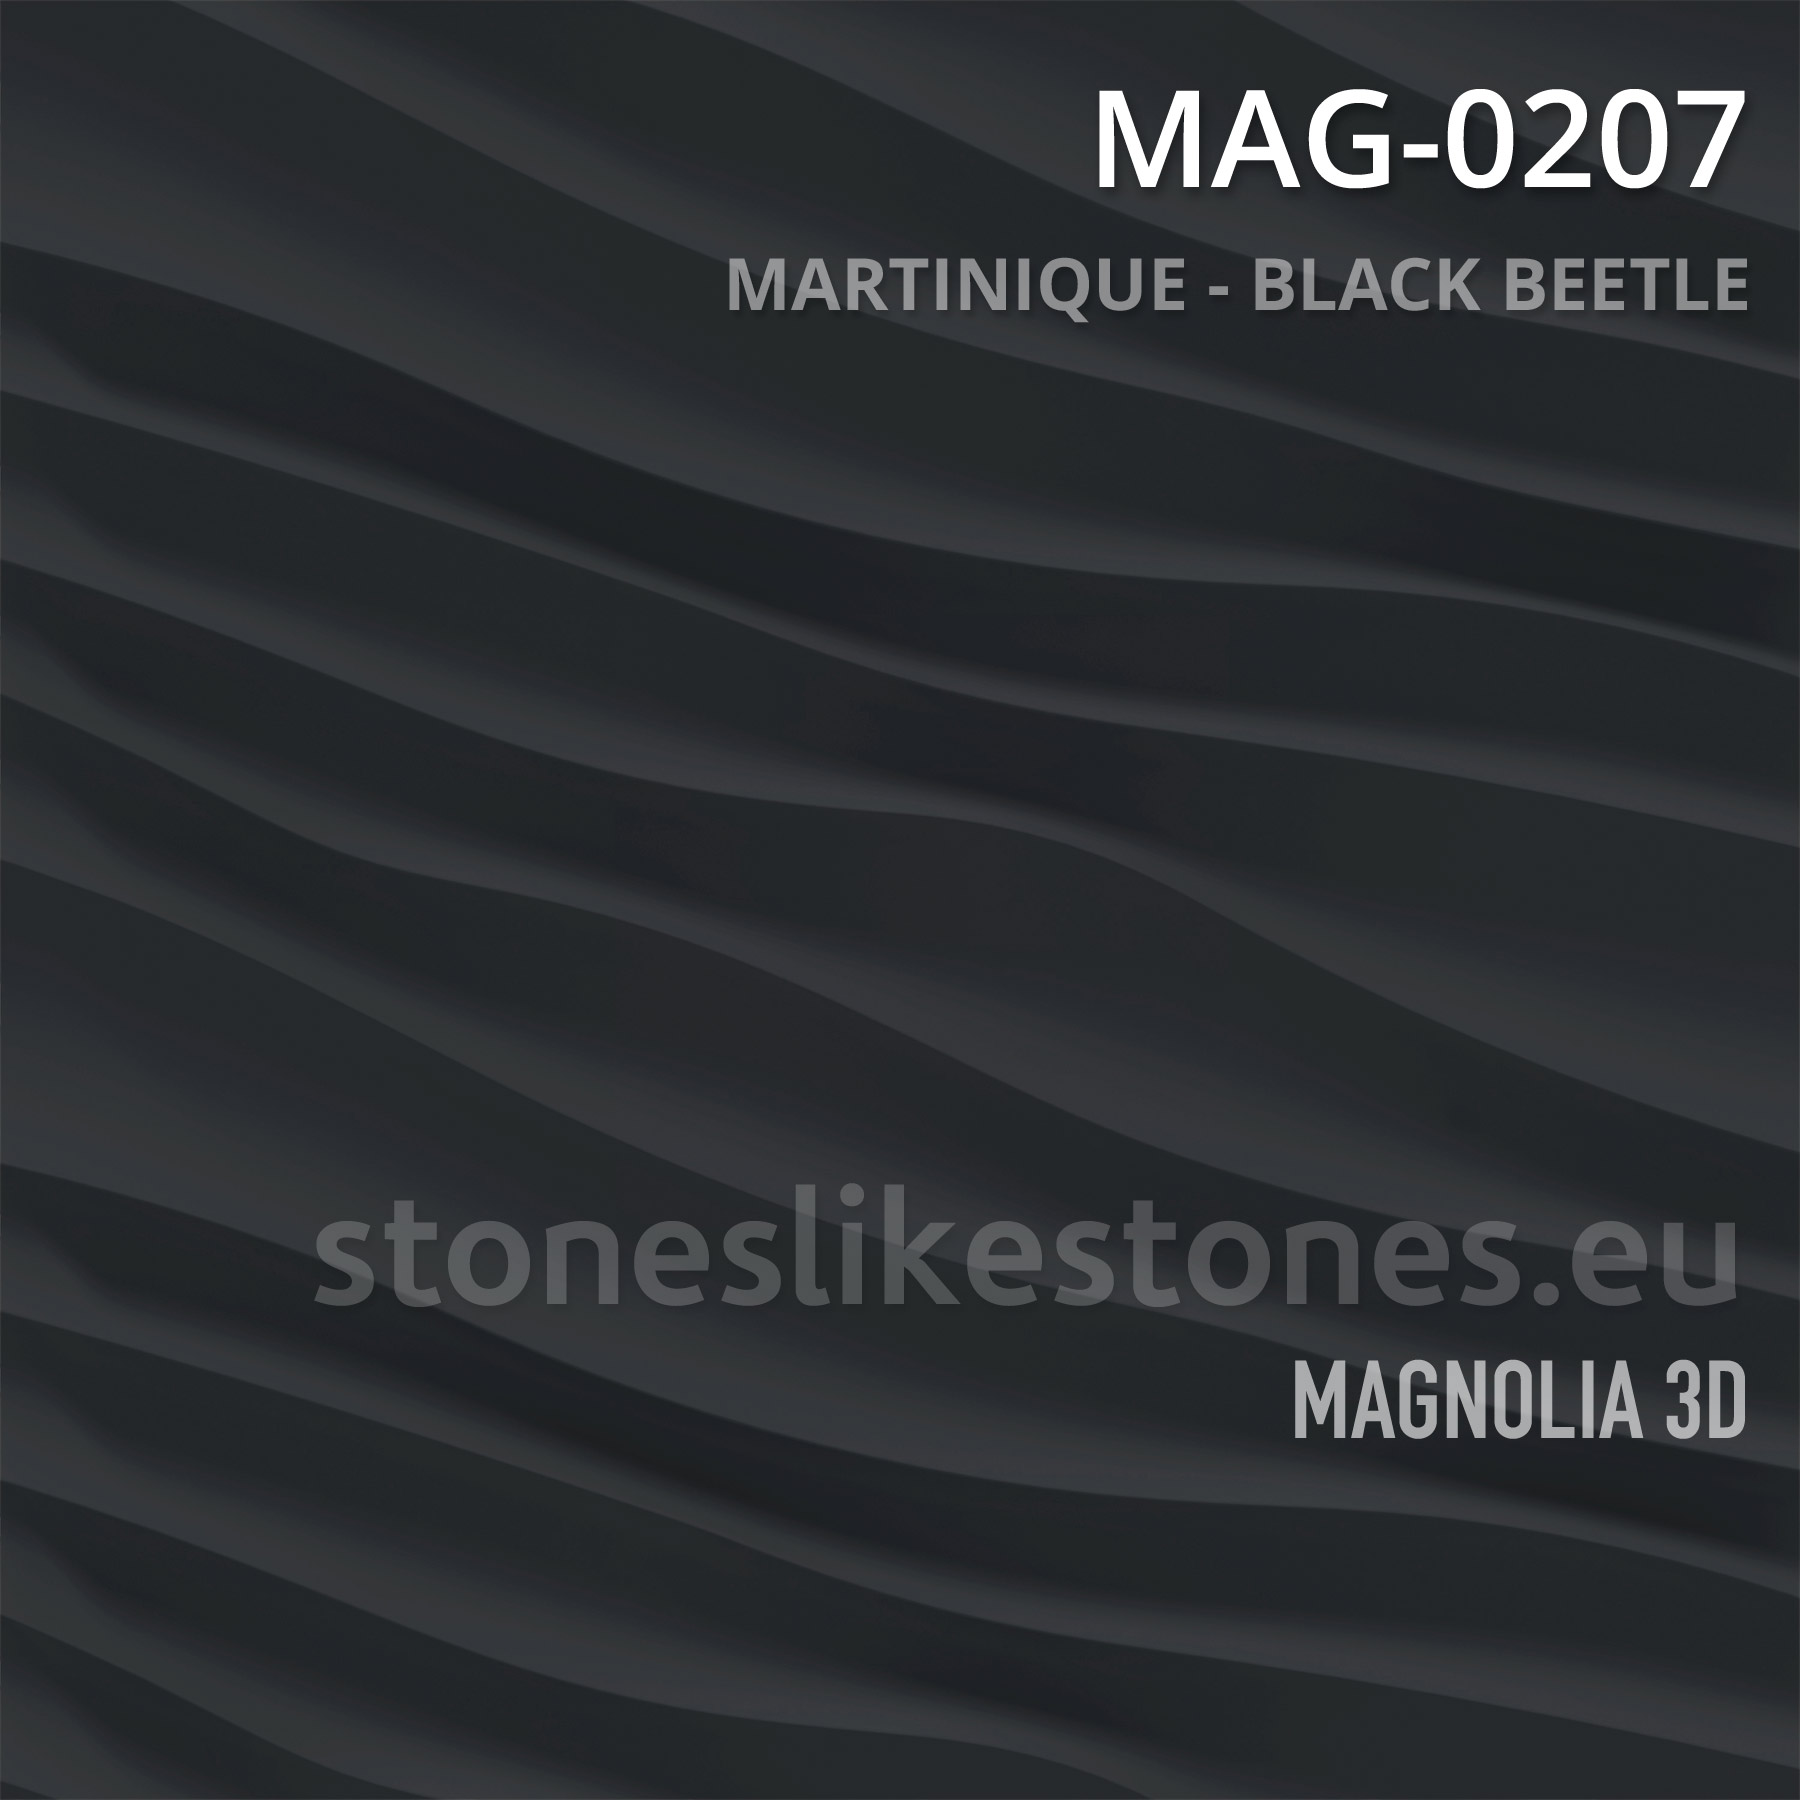 Magnolia 3D – MAG-0207 MARTINIQUE – BLACK BEETLE